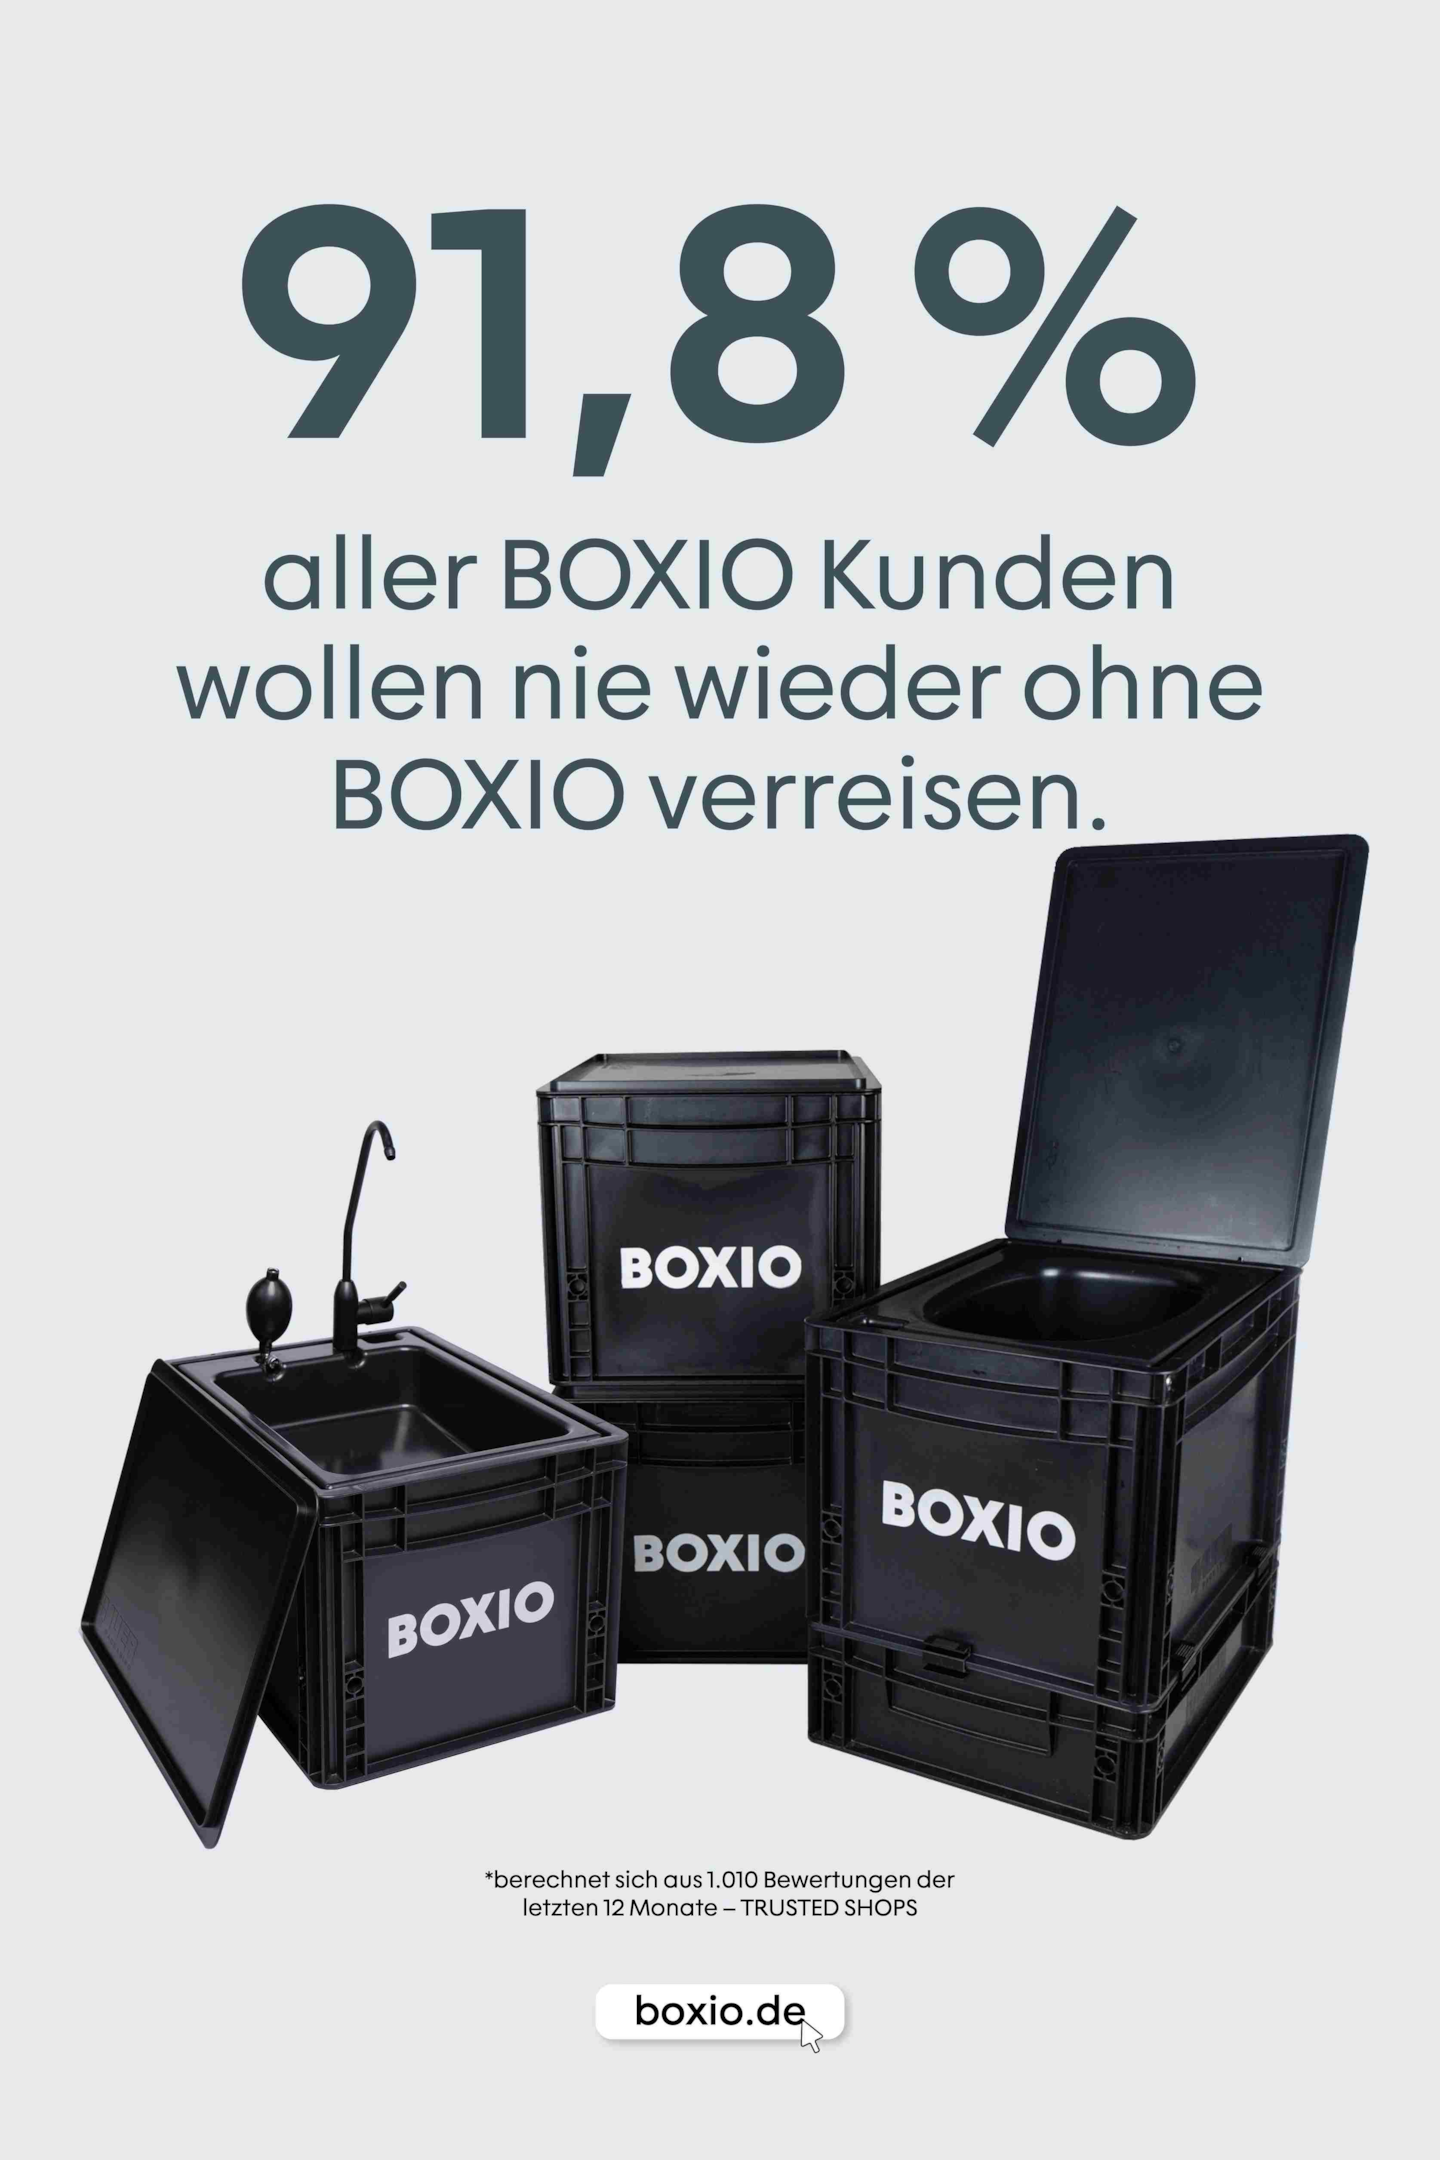  Grafik mit BOXIO-Toilet und Text: 91,8 Prozent aller BOXIO-Kunden wollen nie wieder ohne BOXIO verreisen. 